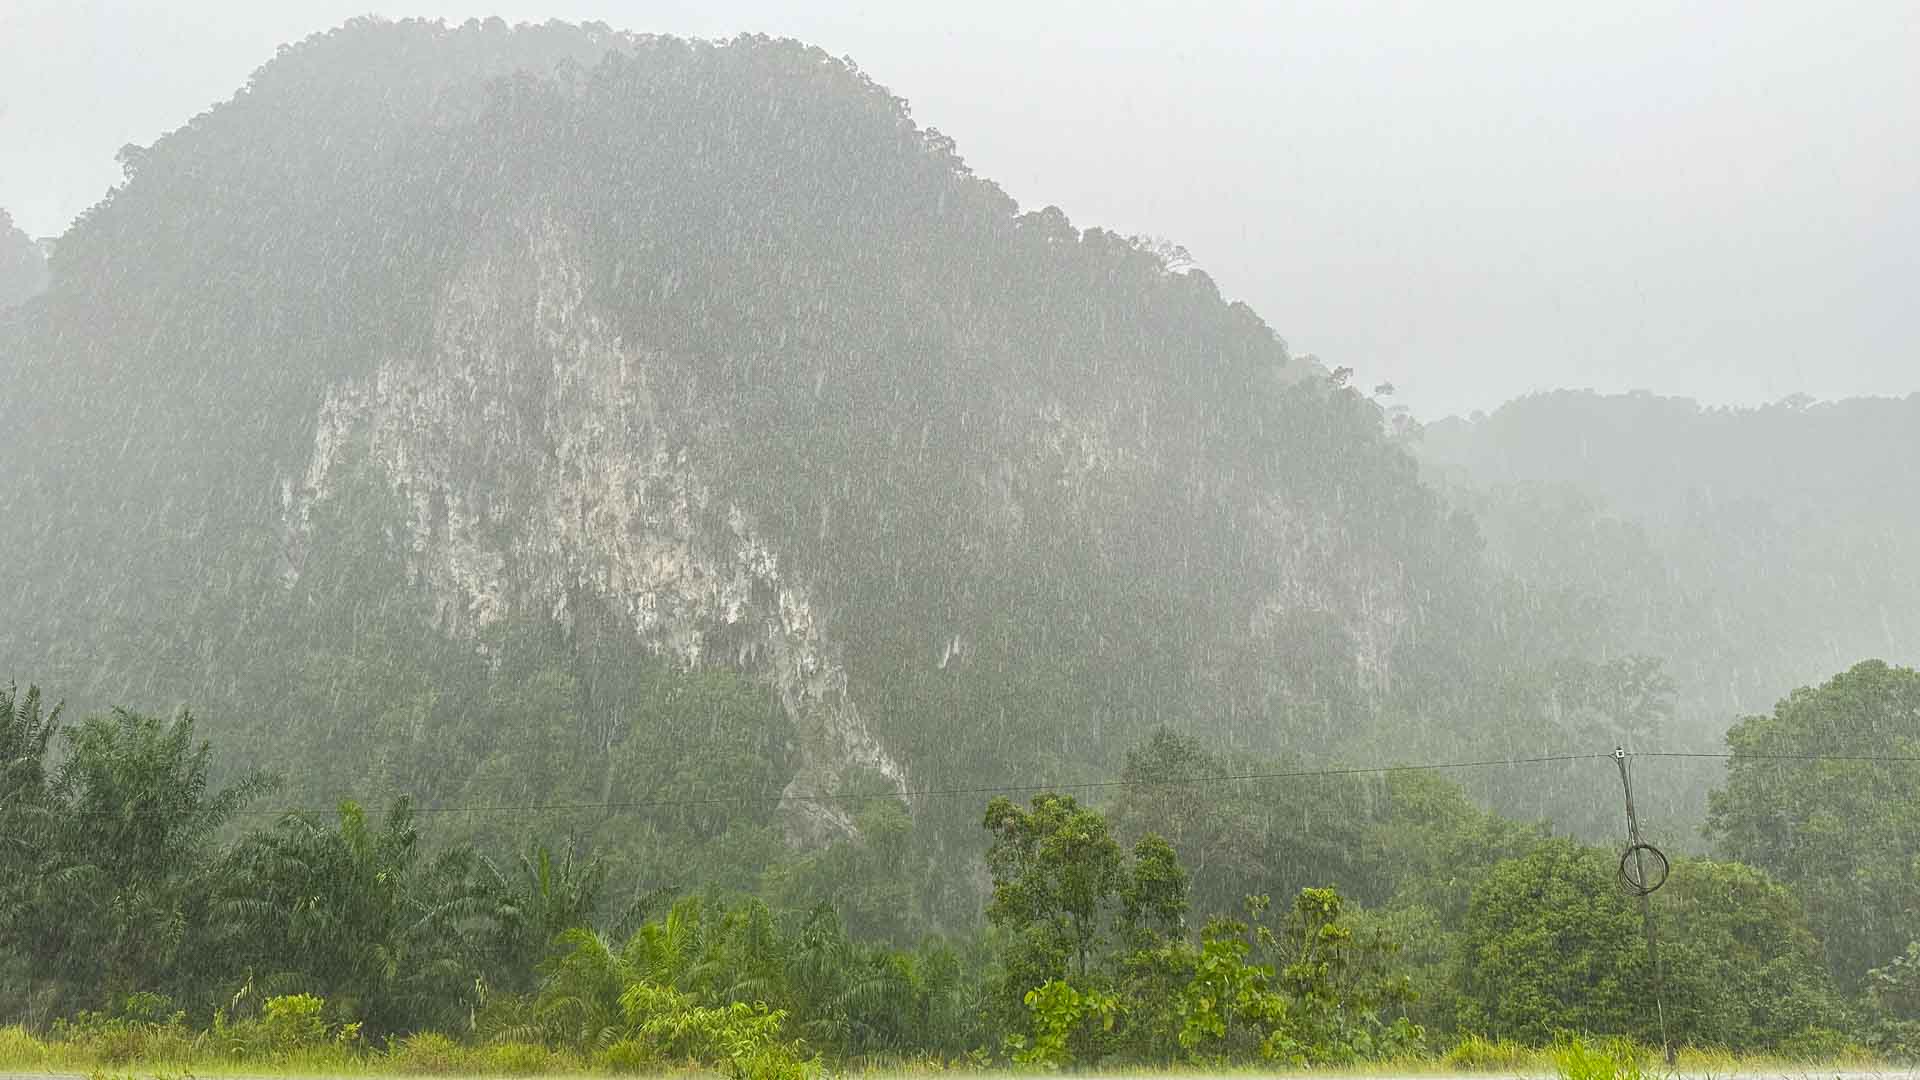 Torrential rain in limestone karst scenery of Borneo